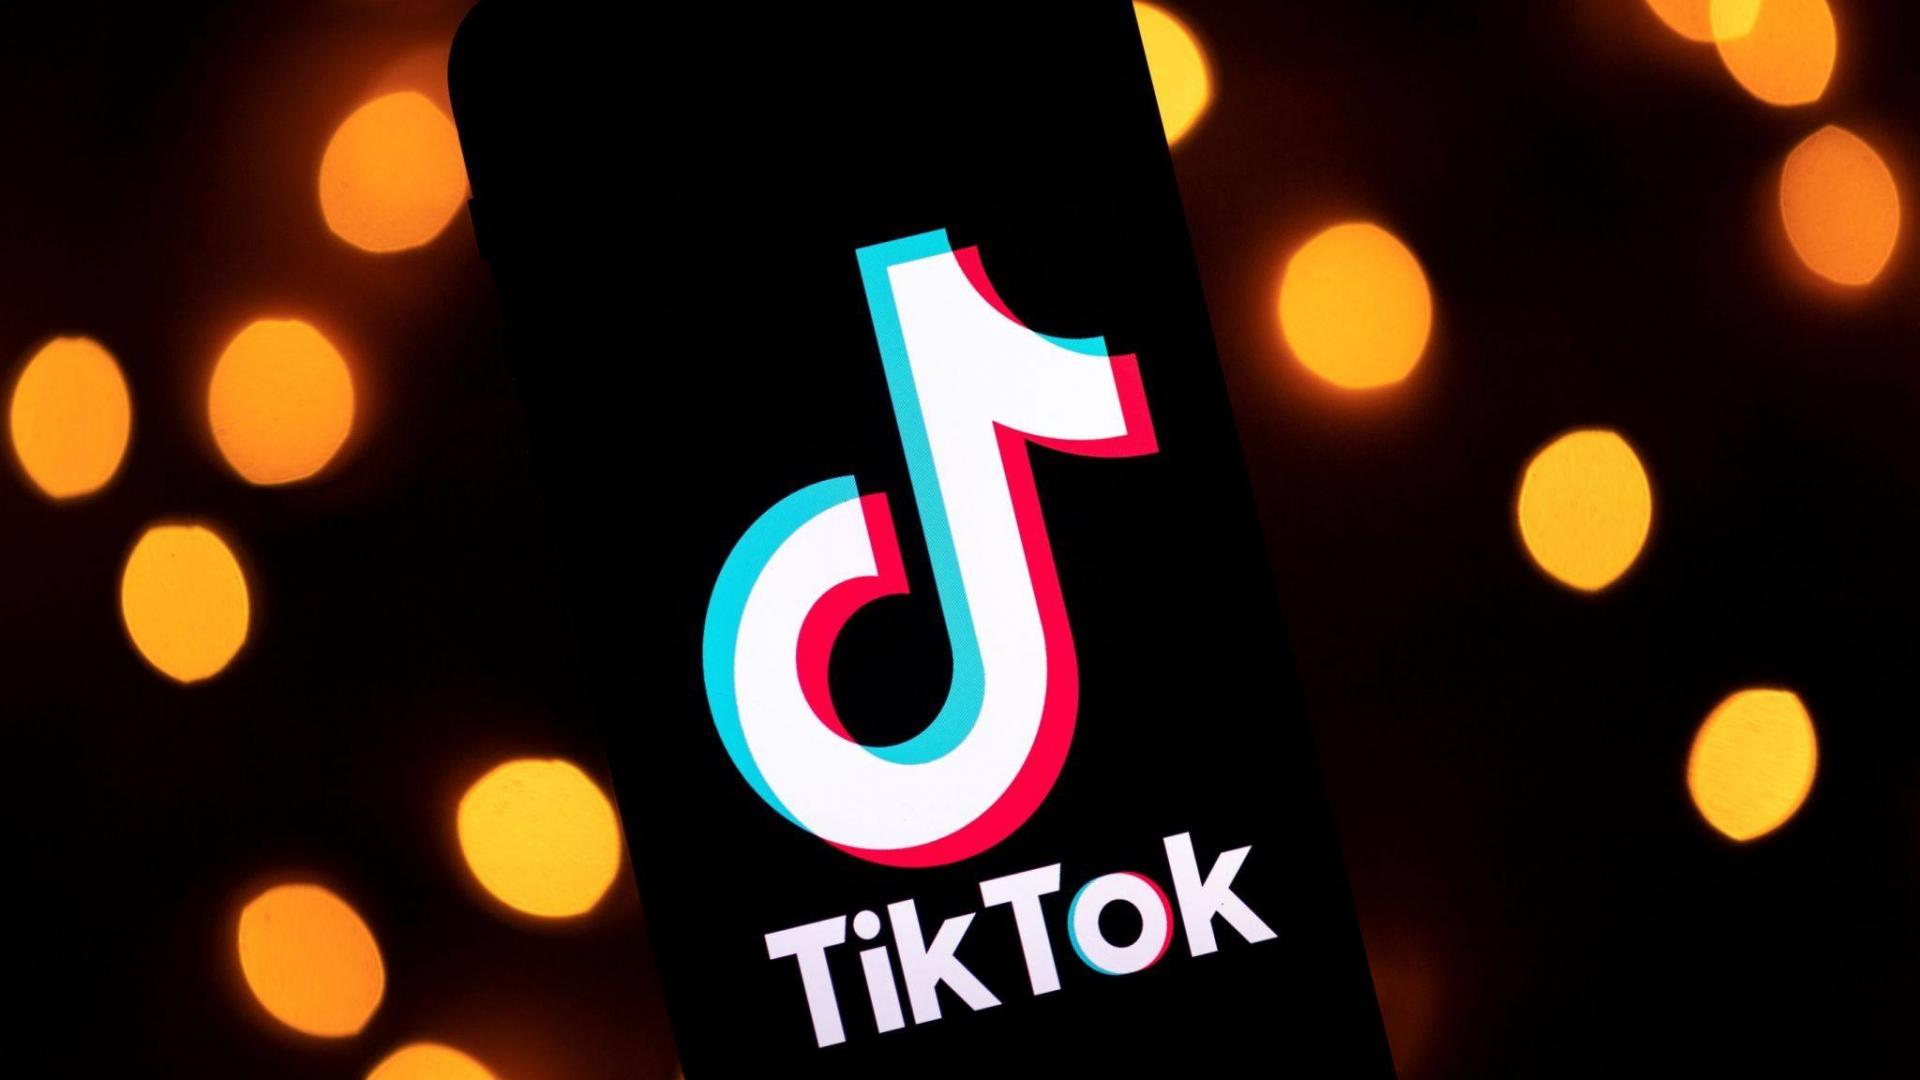 Kim są użytkownicy Tik-Toka i dlaczego marki kosmetyczne powinny wykorzystać siłę tego medium?